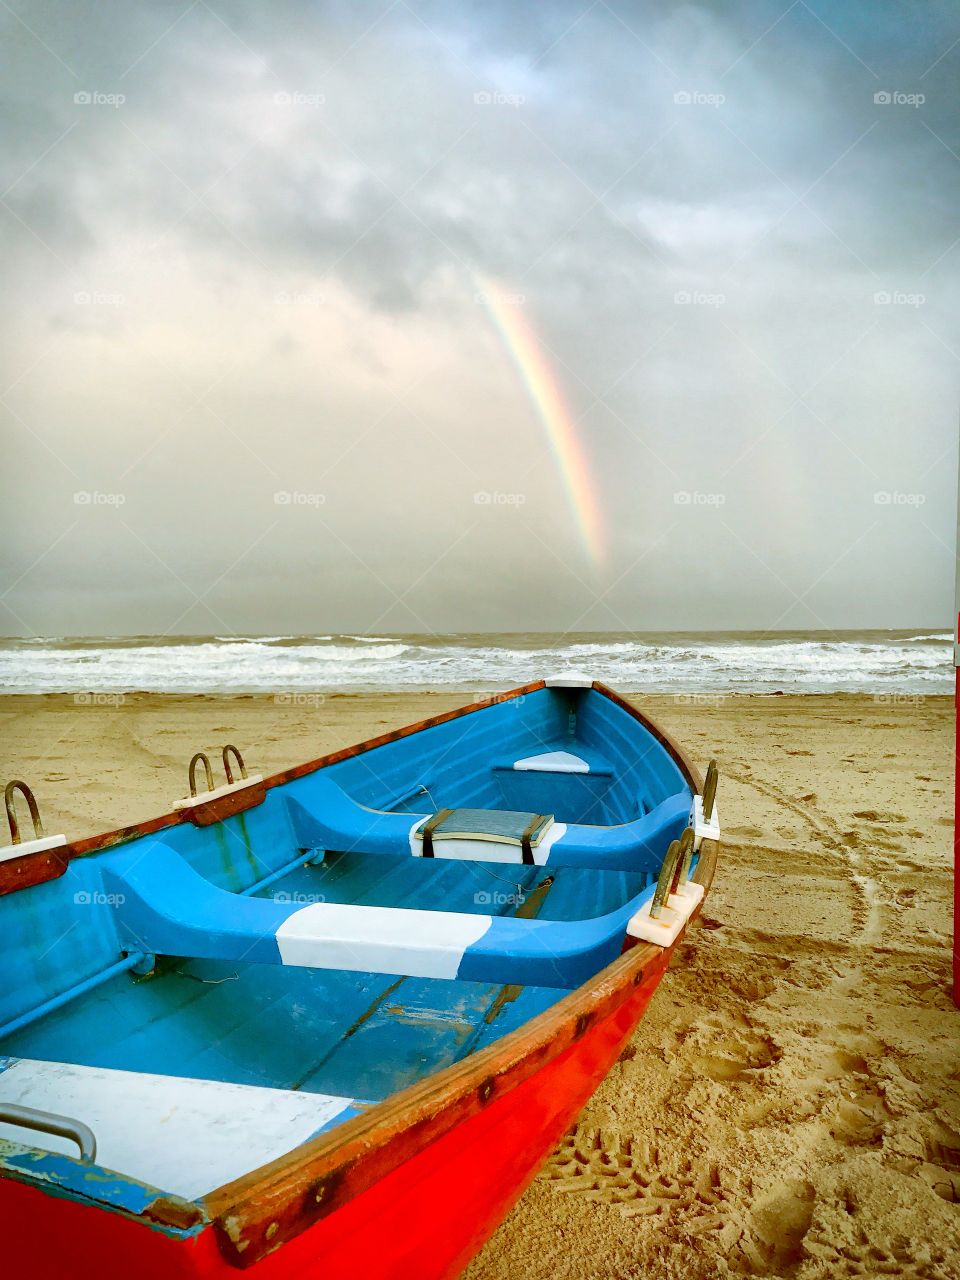 Boat on a rainy beach with a rainbow